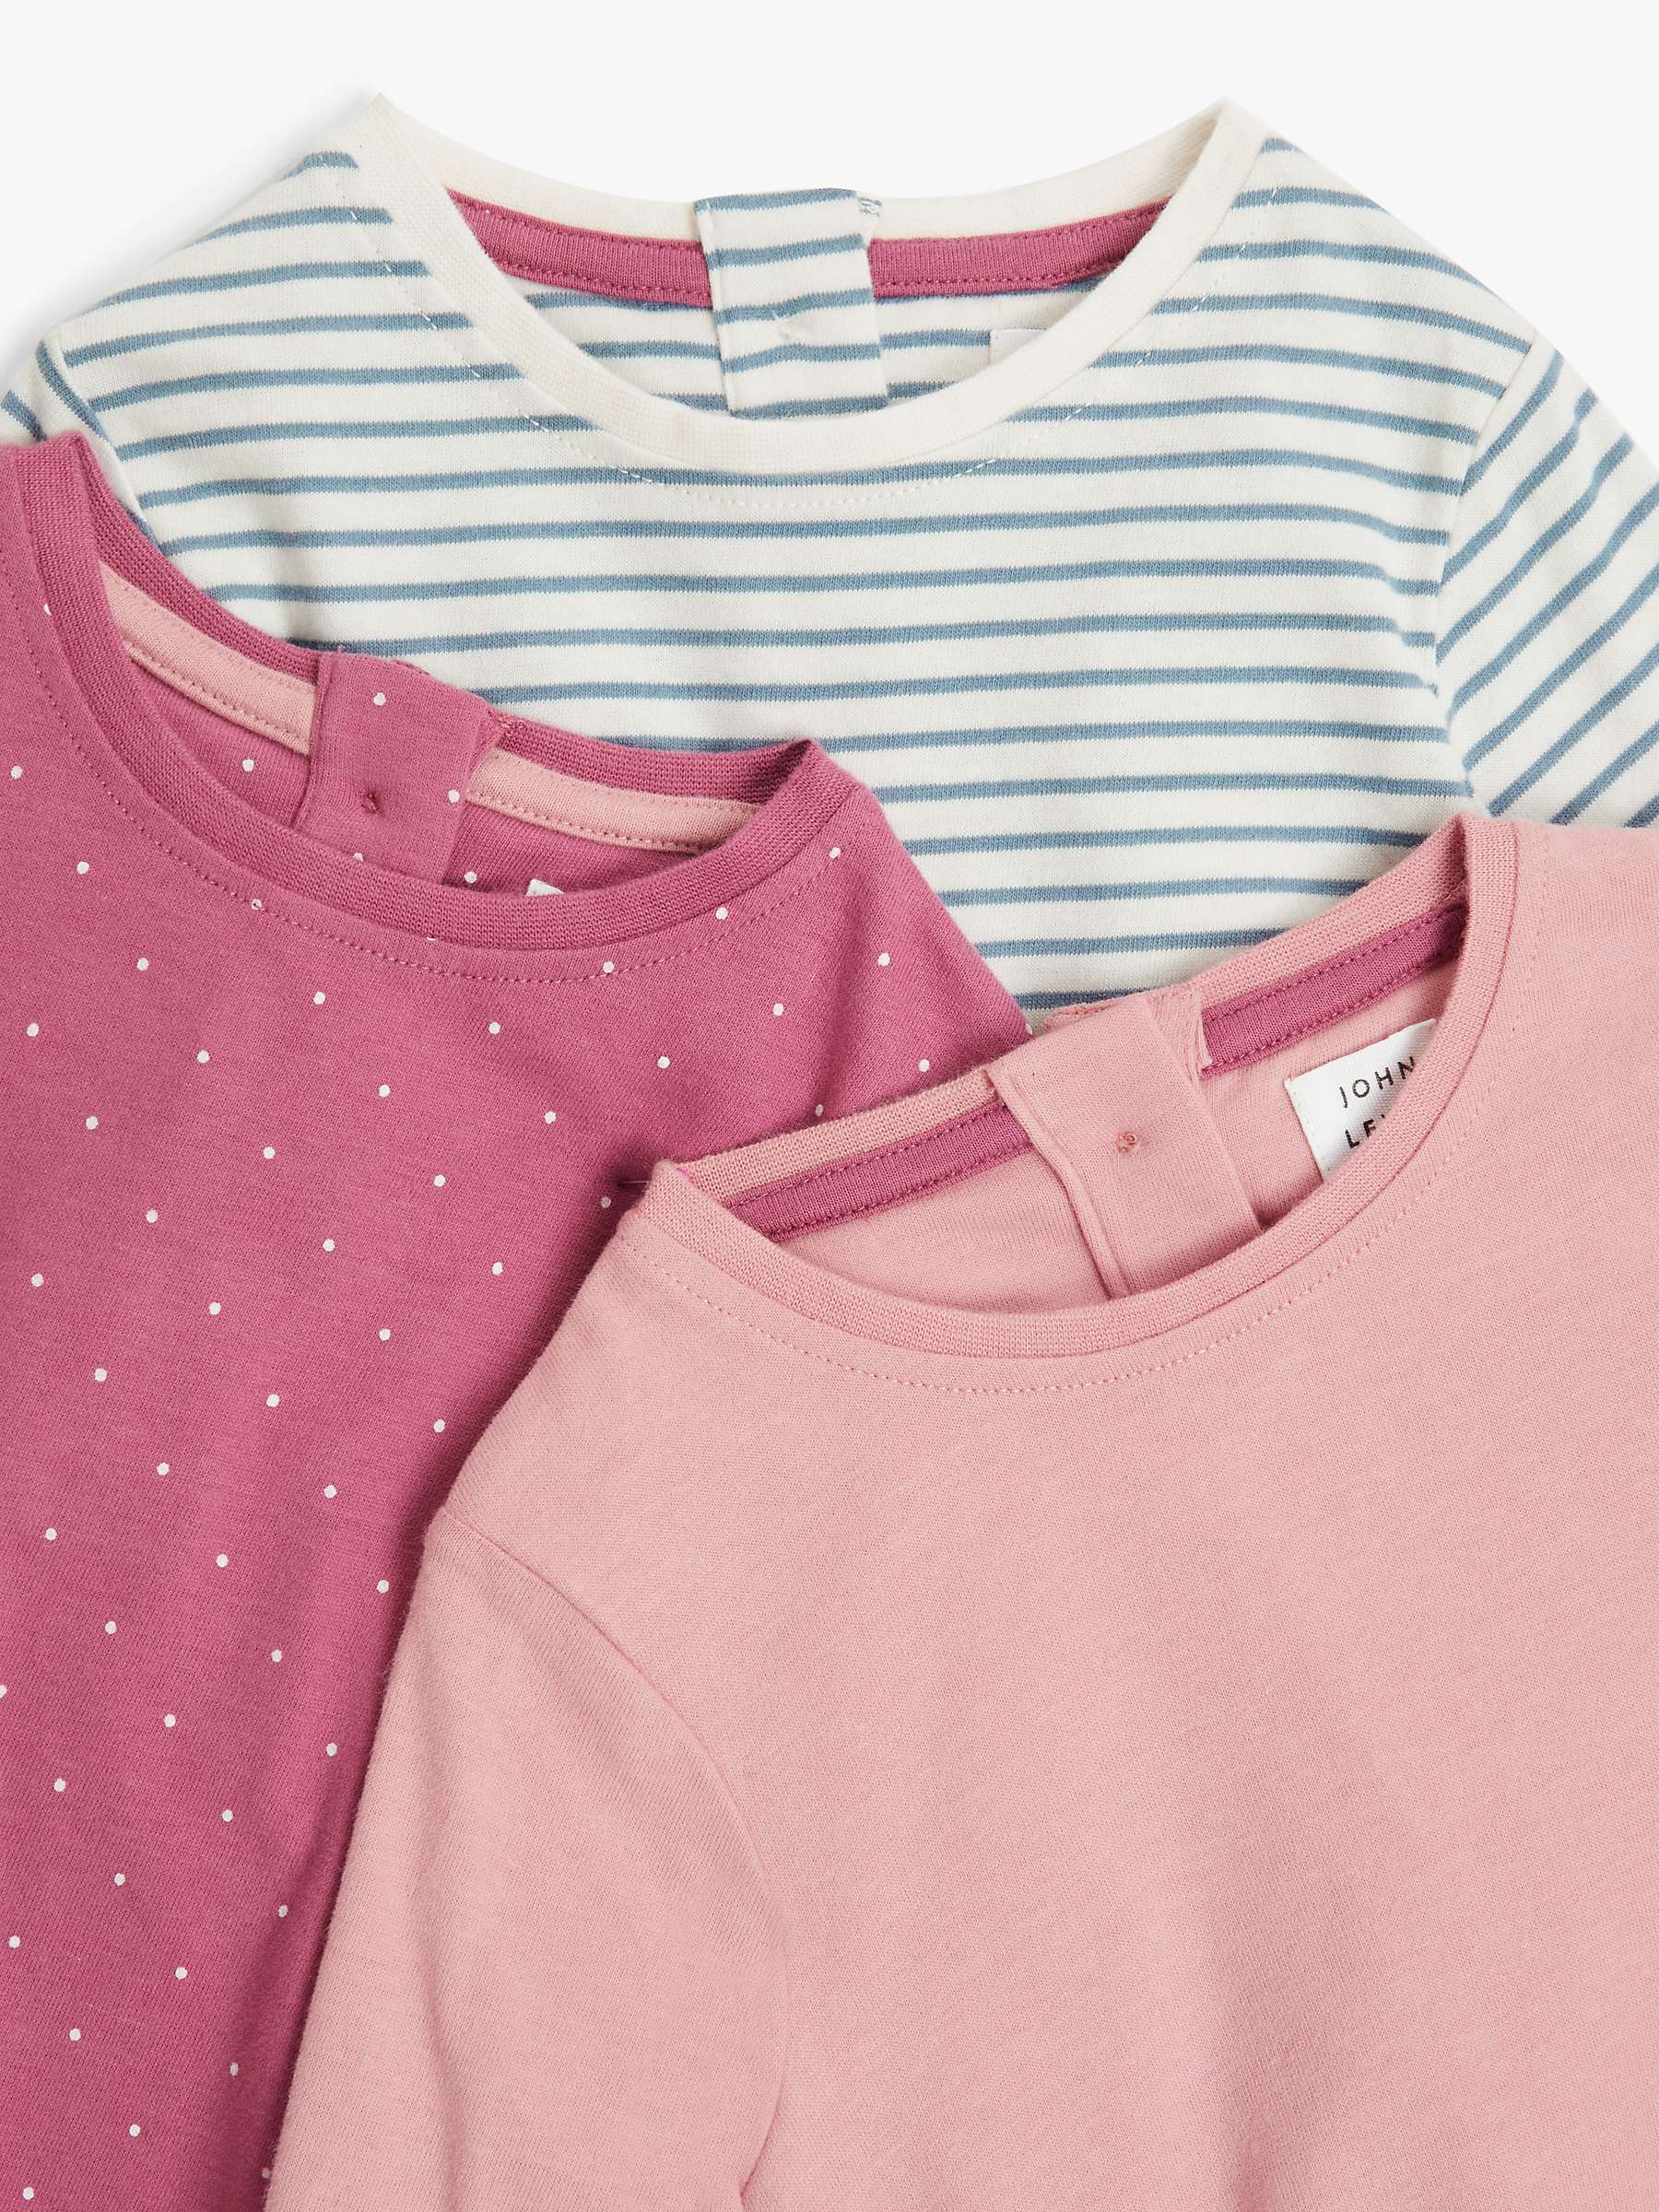 John Lewis John Lewis Girls Pink Polka Dot  Basic T-Shirt Size 3-6 Months 